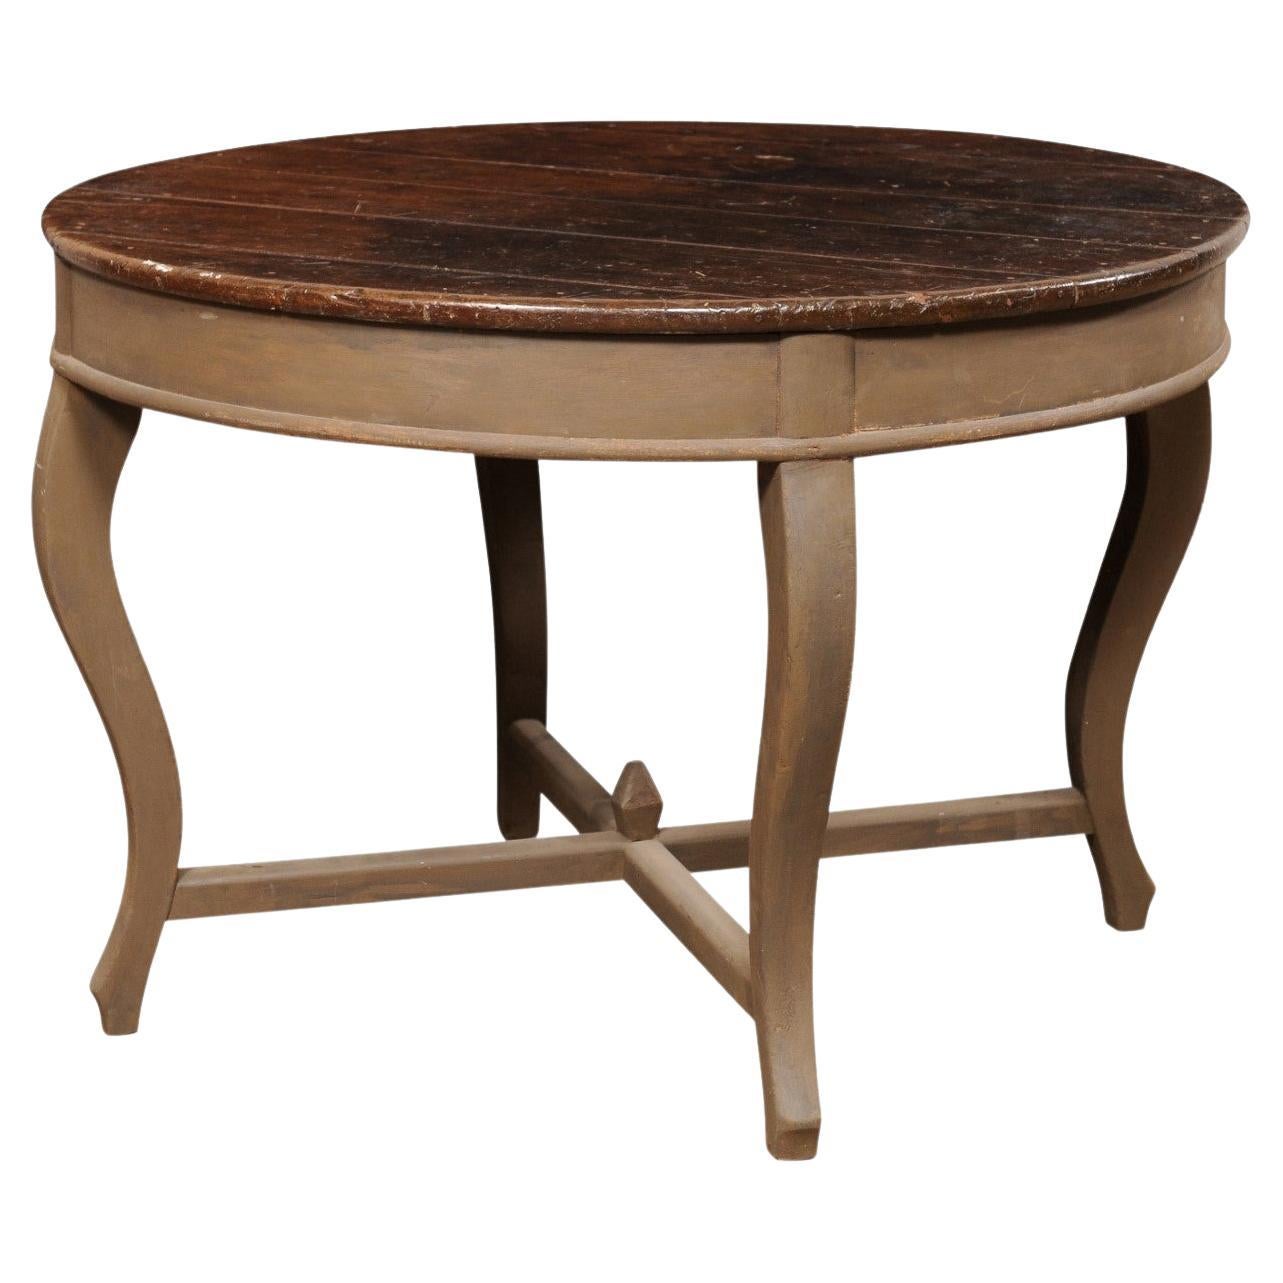 Table centrale en bois Peroba brésilien du 19e siècle, 3,75 pieds de diamètre